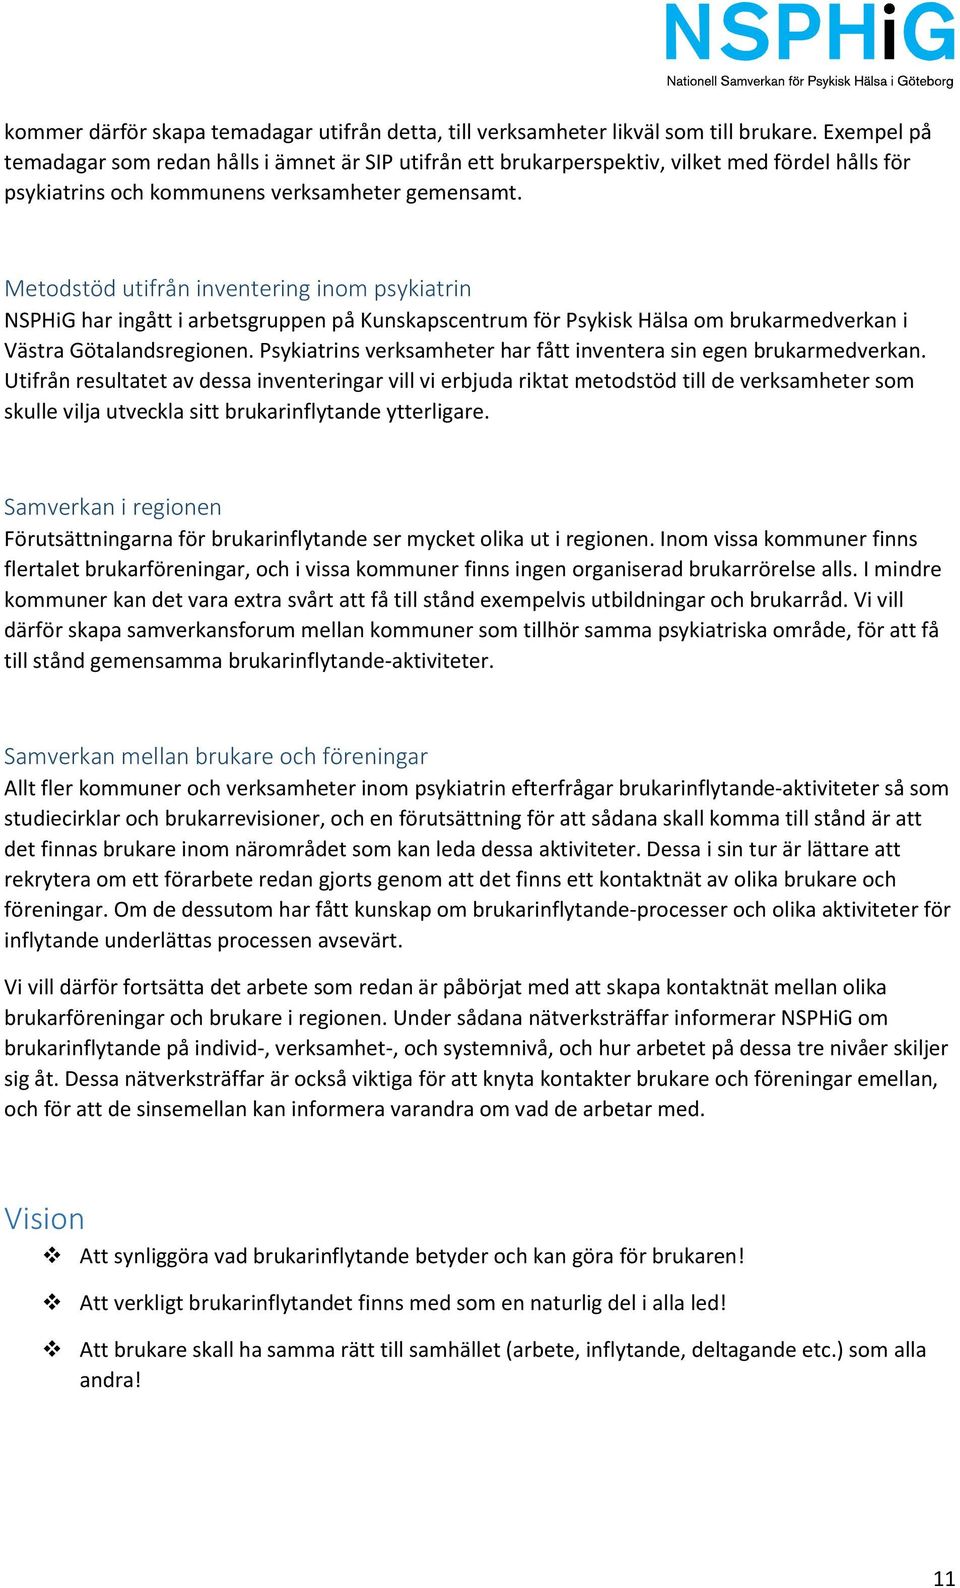 Metodstöd utifrån inventering inom psykiatrin NSPHiG har ingått i arbetsgruppen på Kunskapscentrum för Psykisk Hälsa om brukarmedverkan i Västra Götalandsregionen.